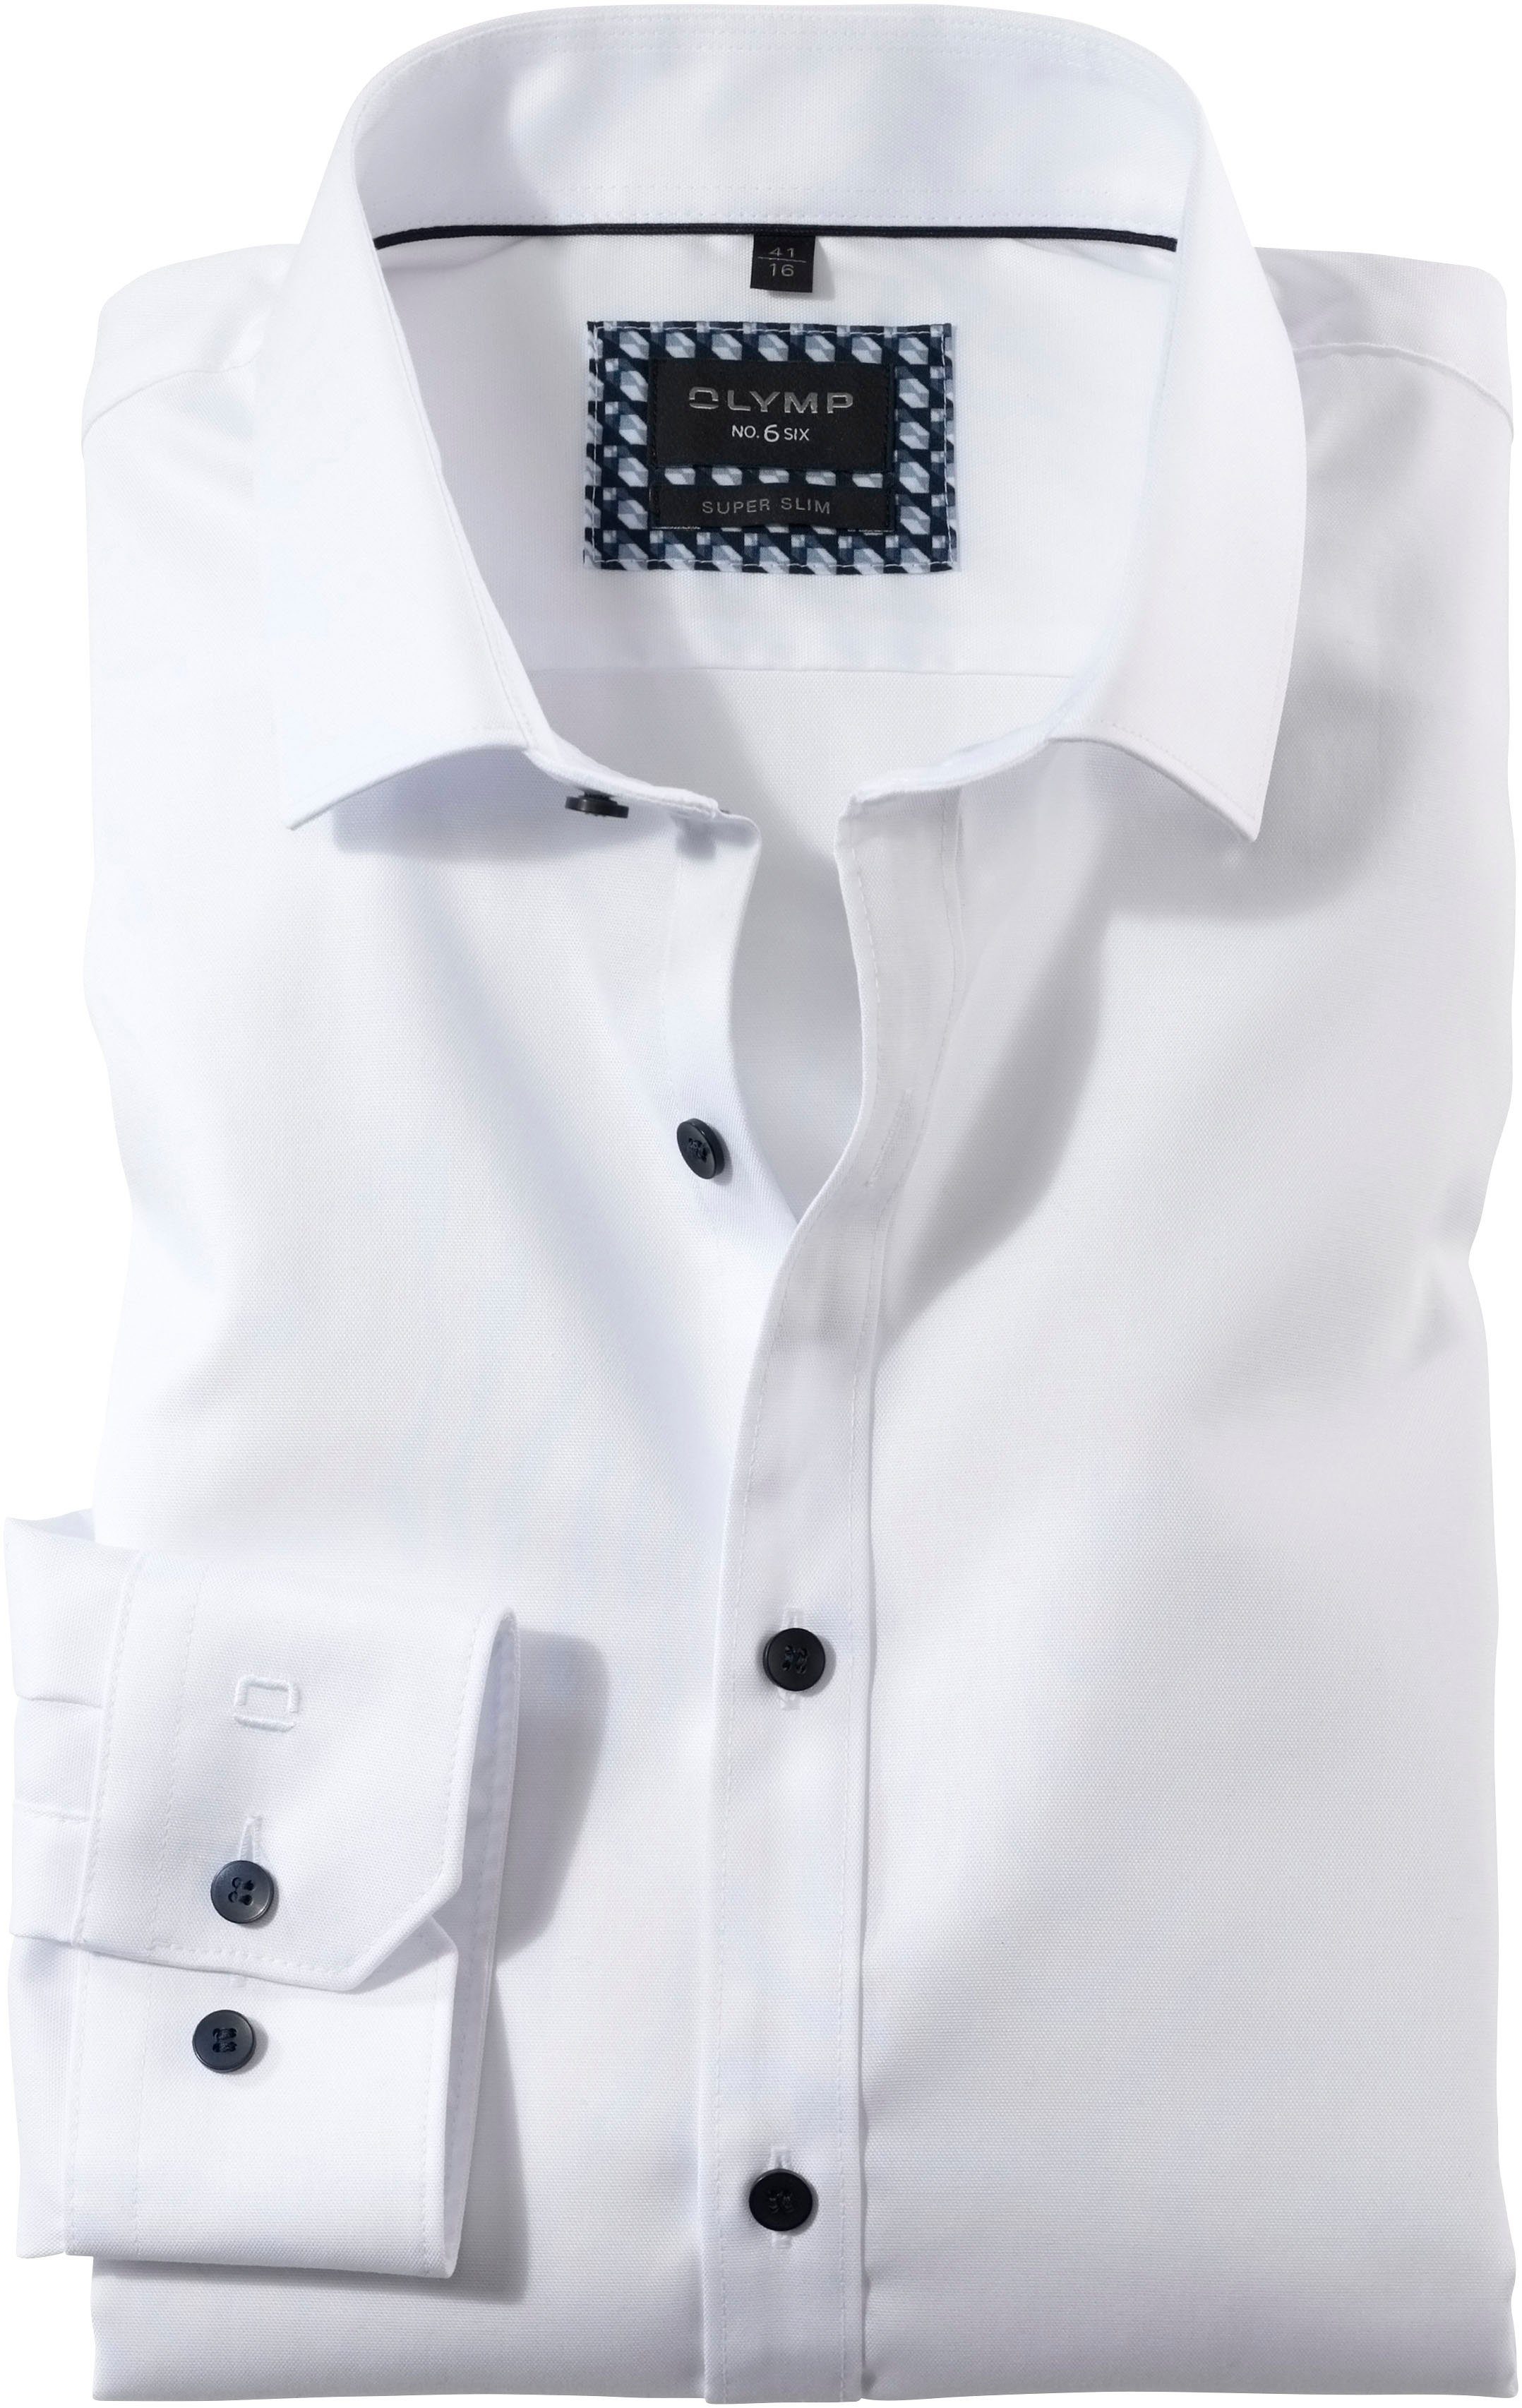 OLYMP Businesshemd No. Six super slim aus der No 6 Six-Serie, Businesshemd  von Olymp Fashion | Klassische Hemden